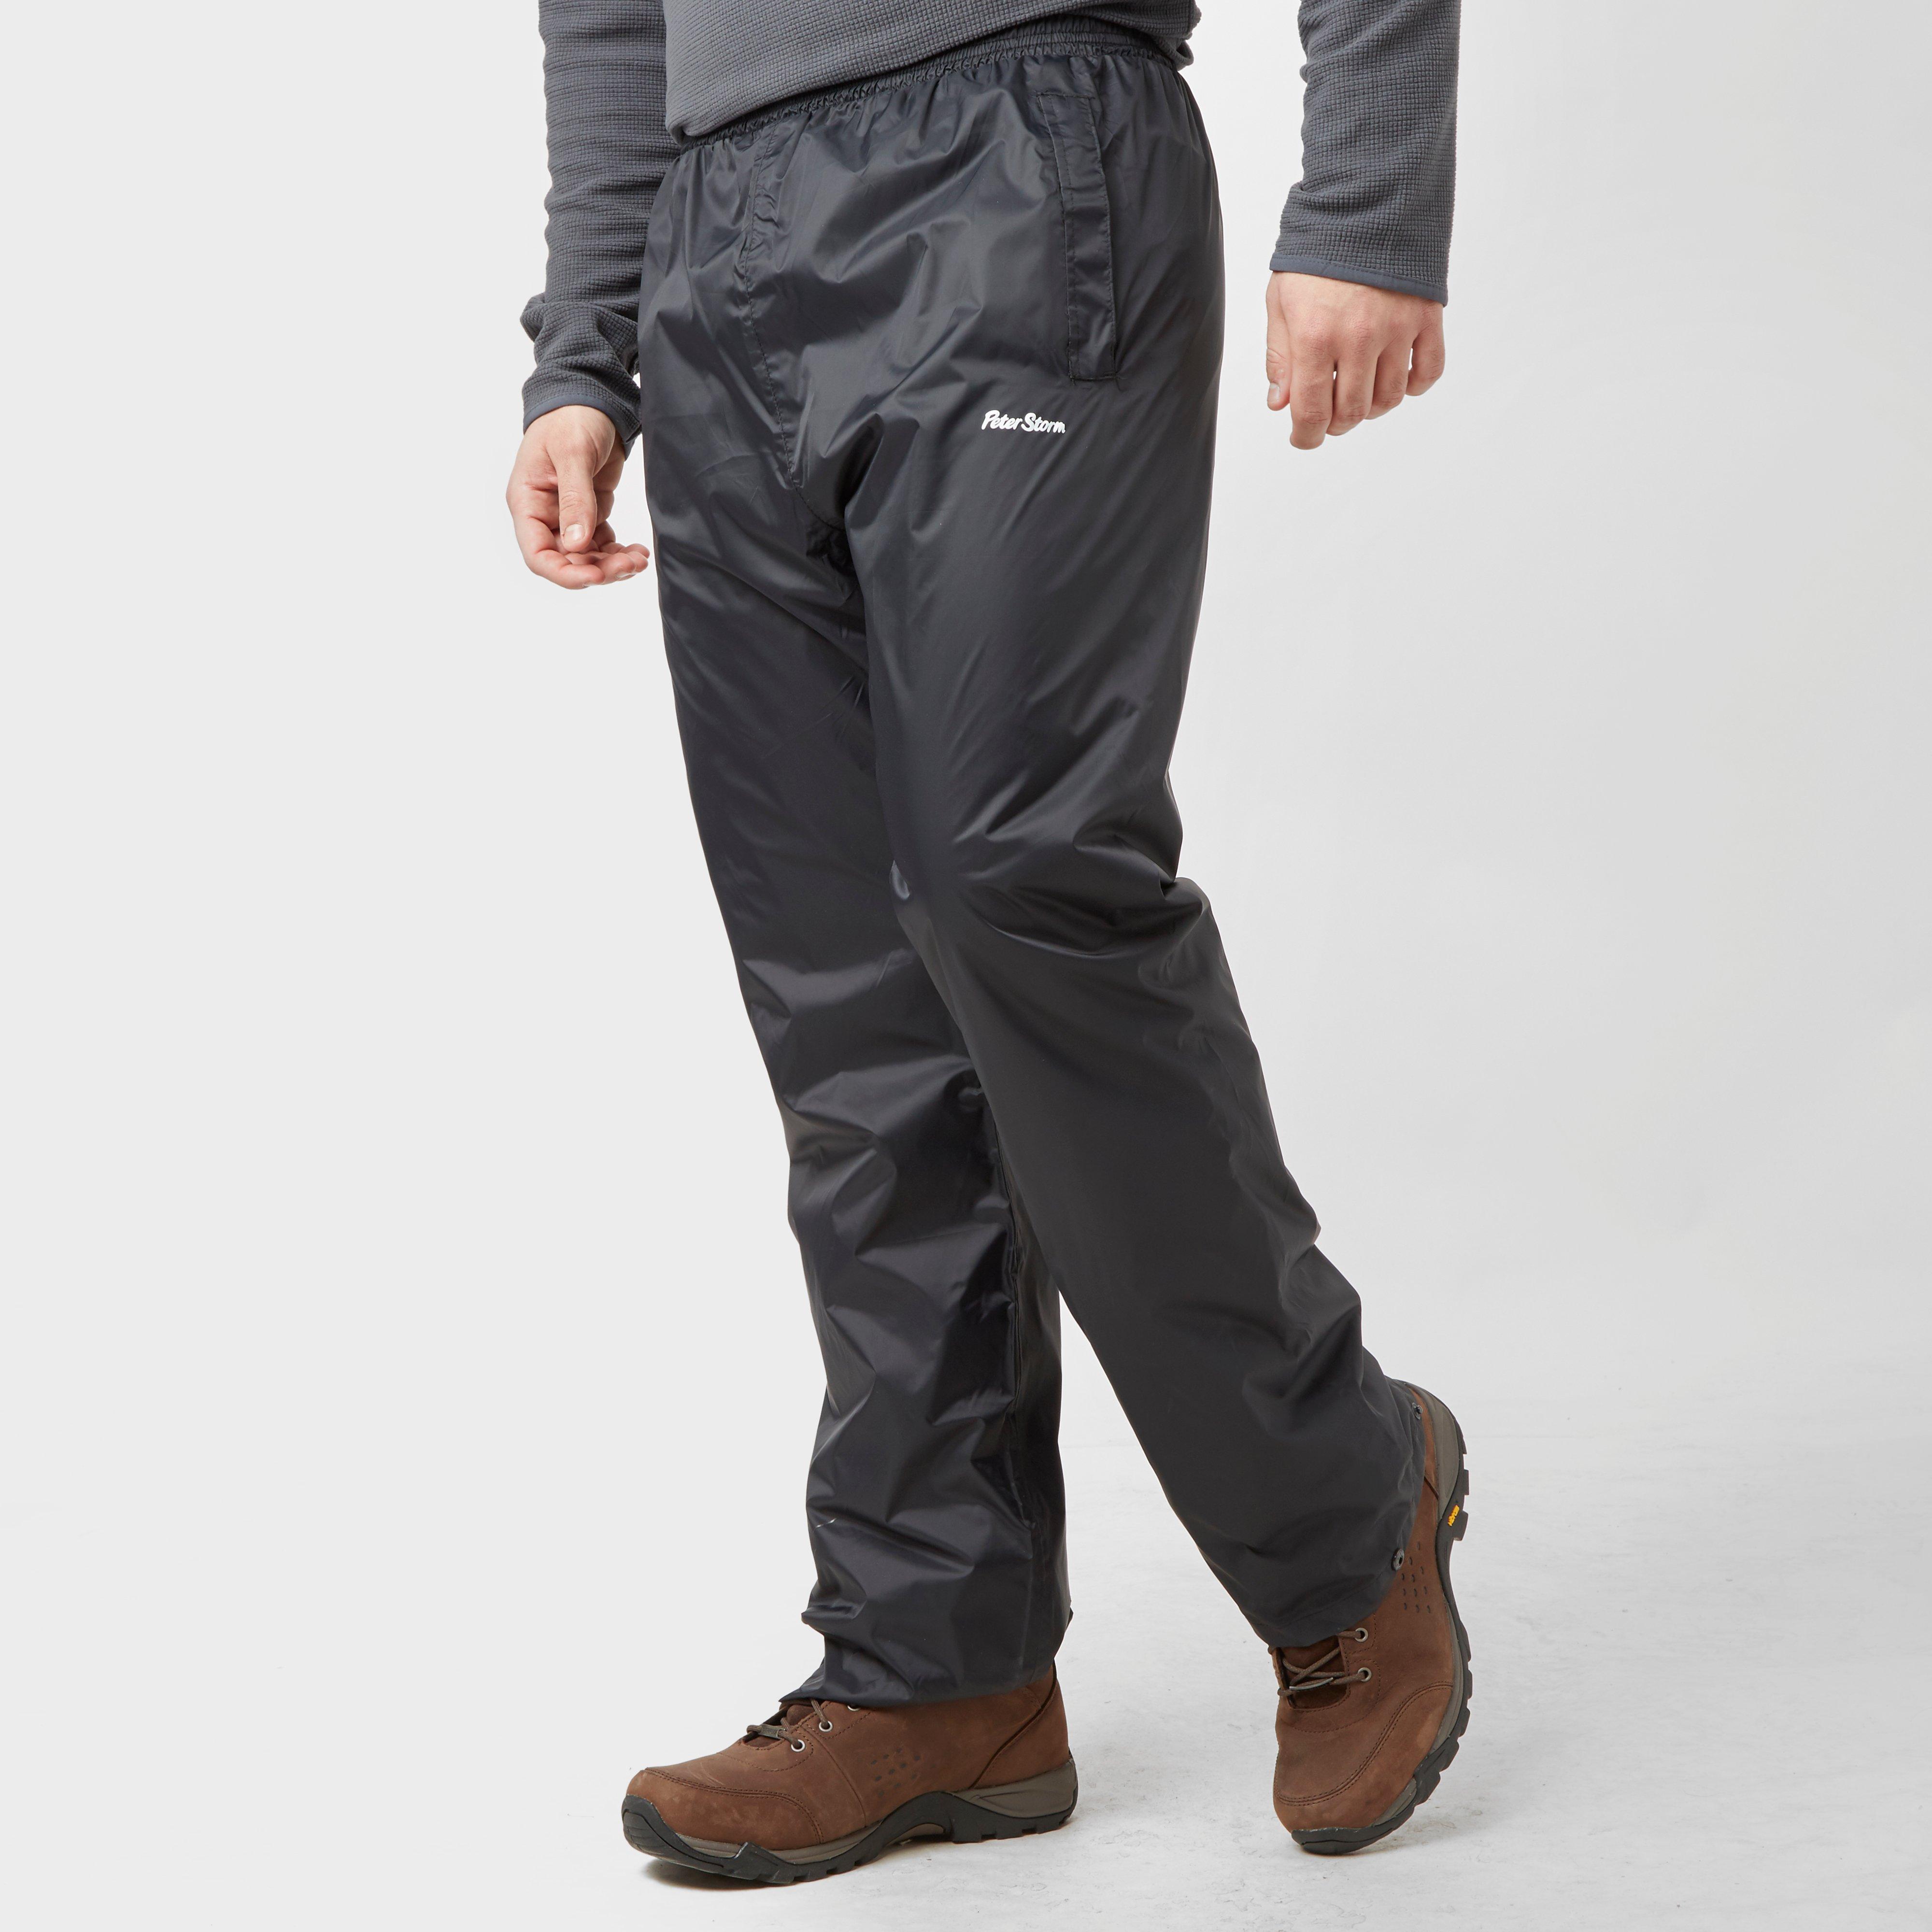 Peter Storm Mens Packable Pants - Black/blk  Black/blk